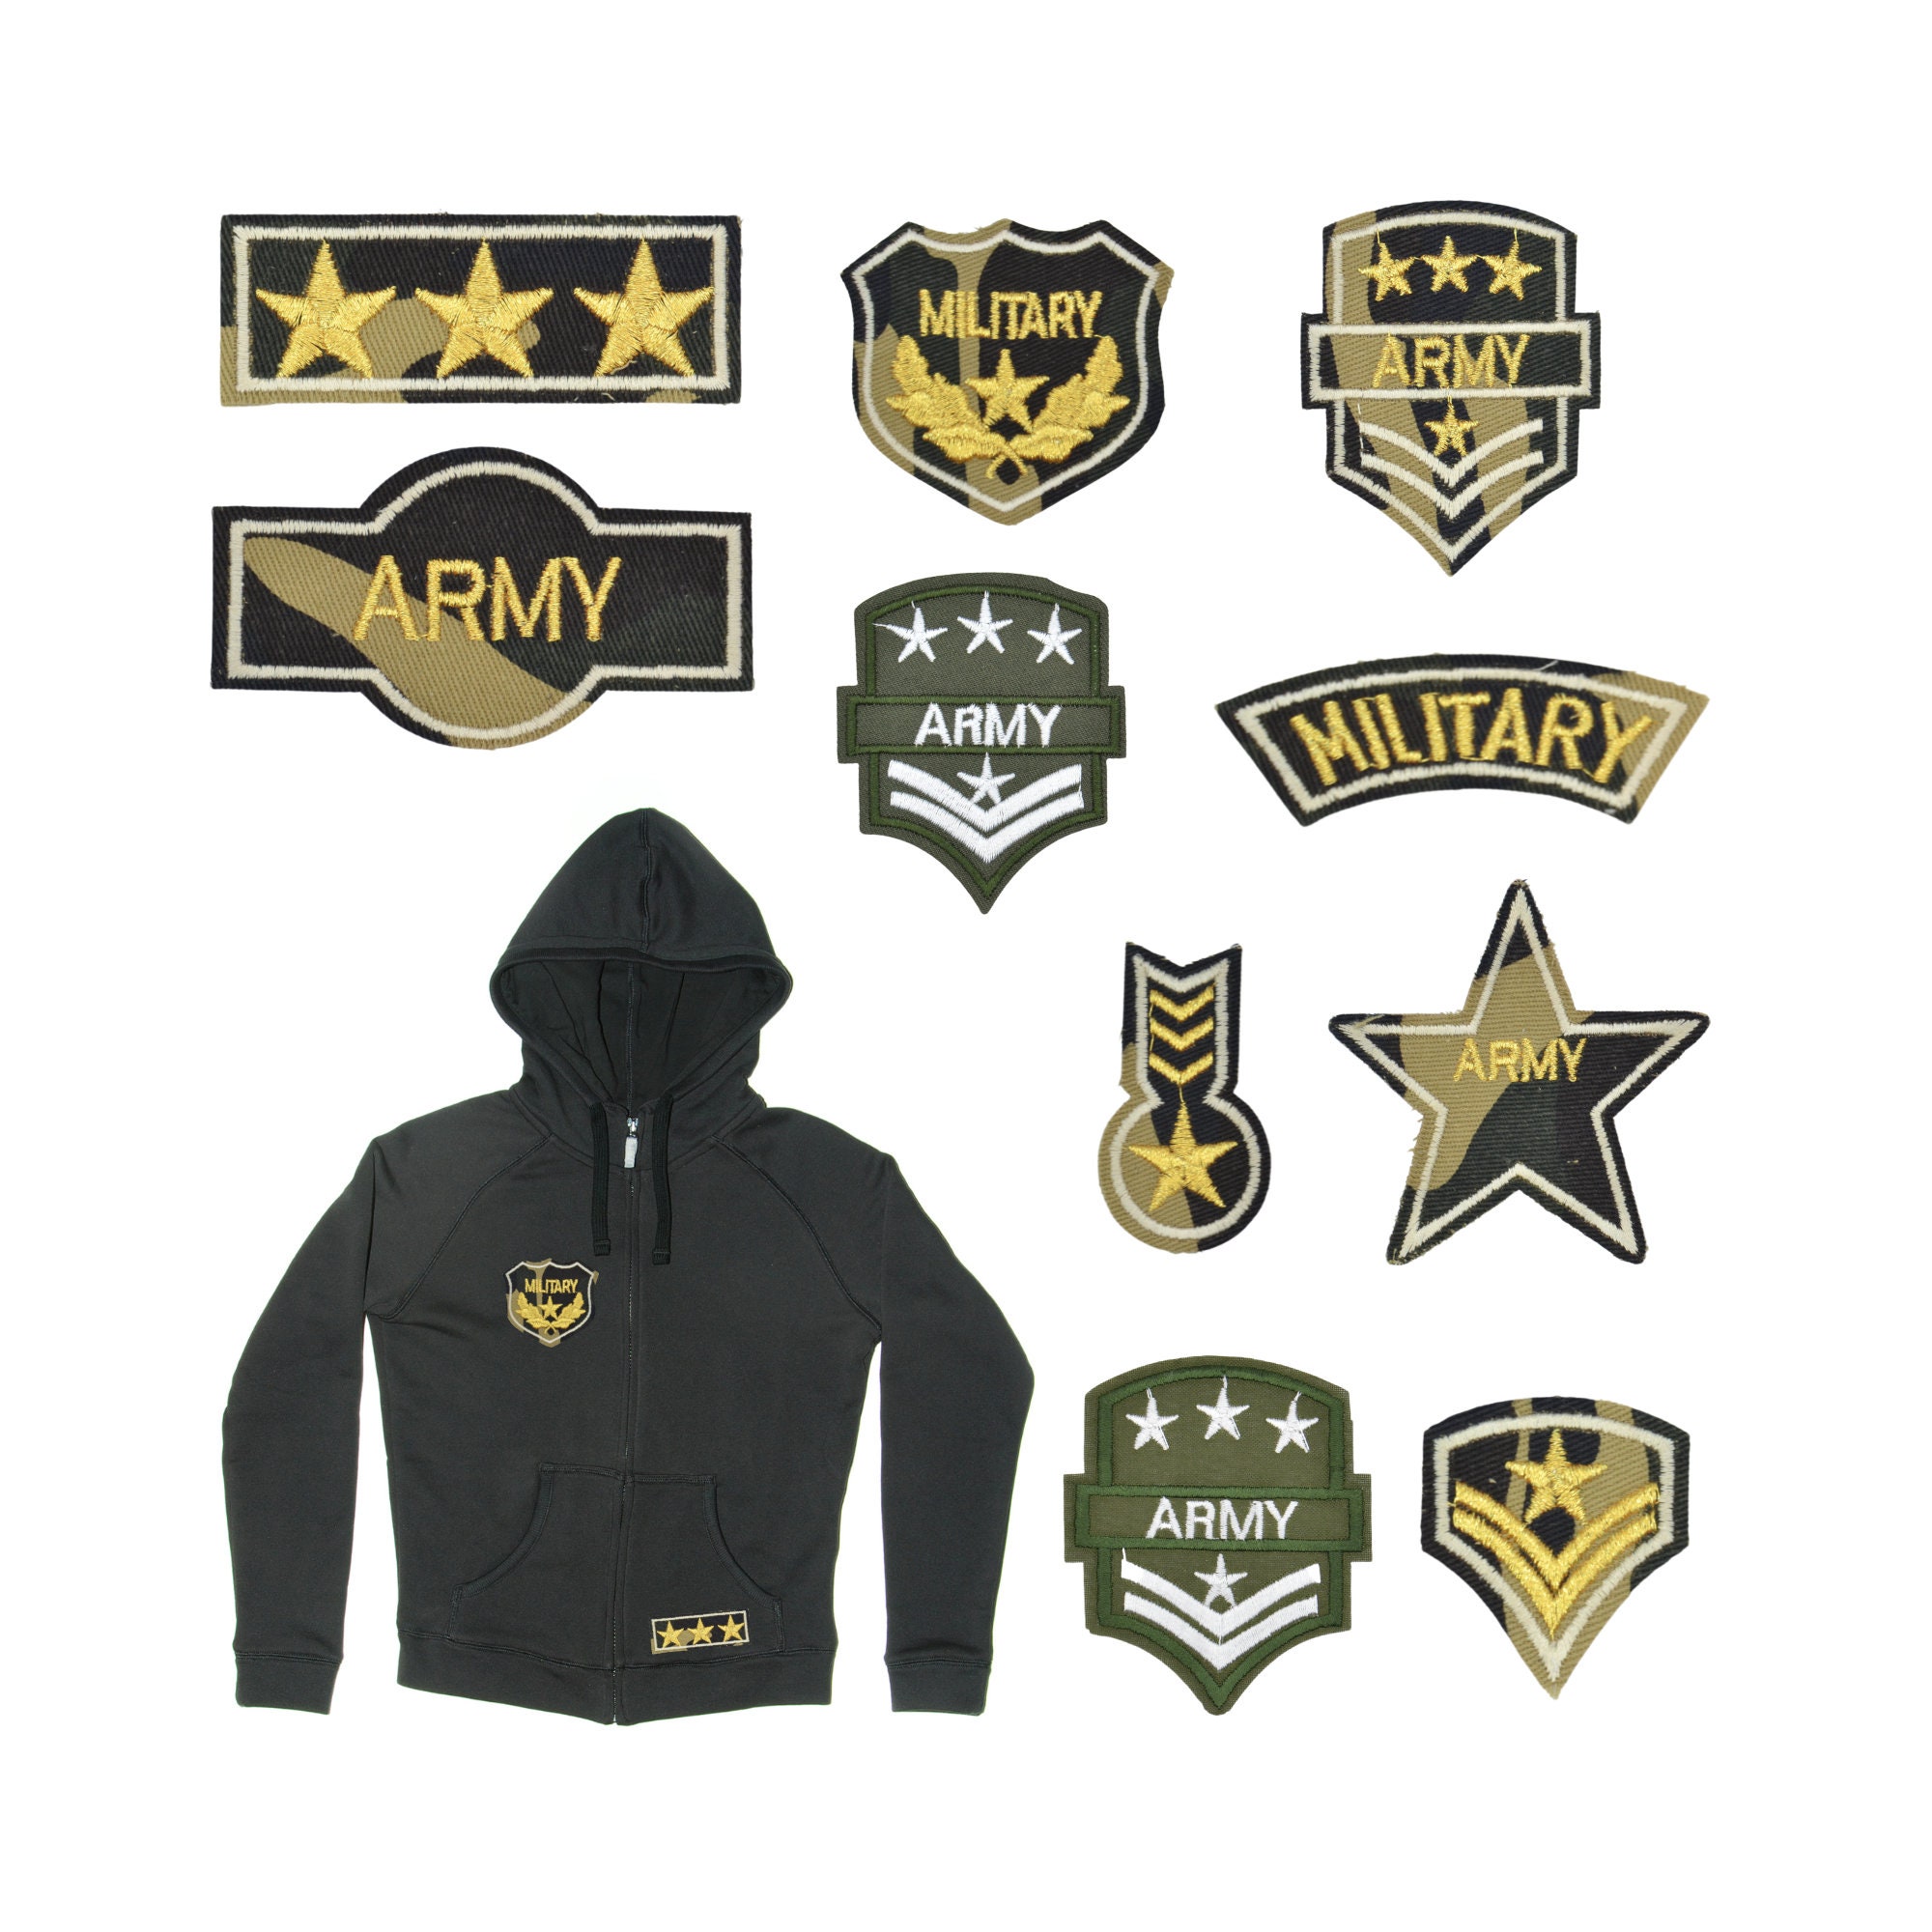 Conjunto de 8 parches bordados para planchar o coser en el ejército bordado  apliques militar bordado motivo transferencia oficial